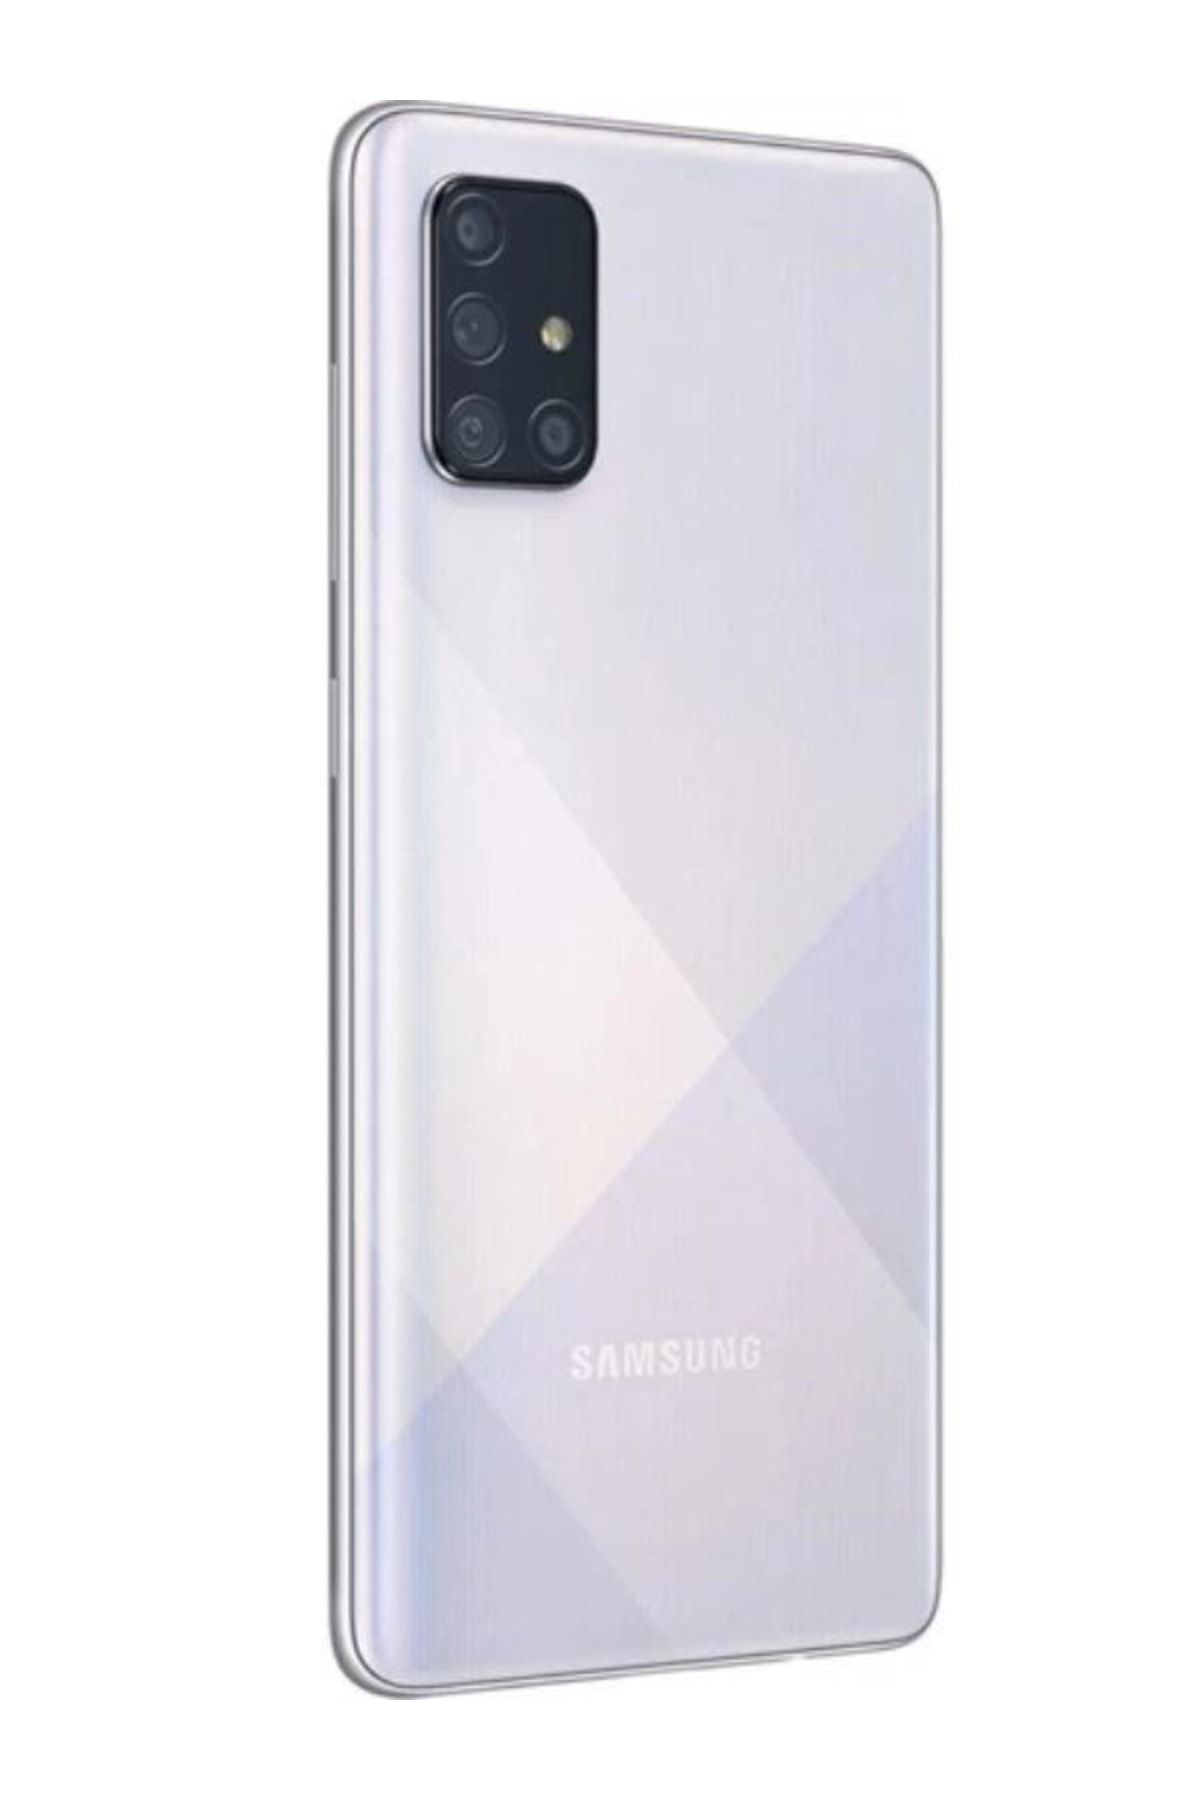 Samsung Yenilenmiş Galaxy A71 128 GB (12 Ay Garantili)